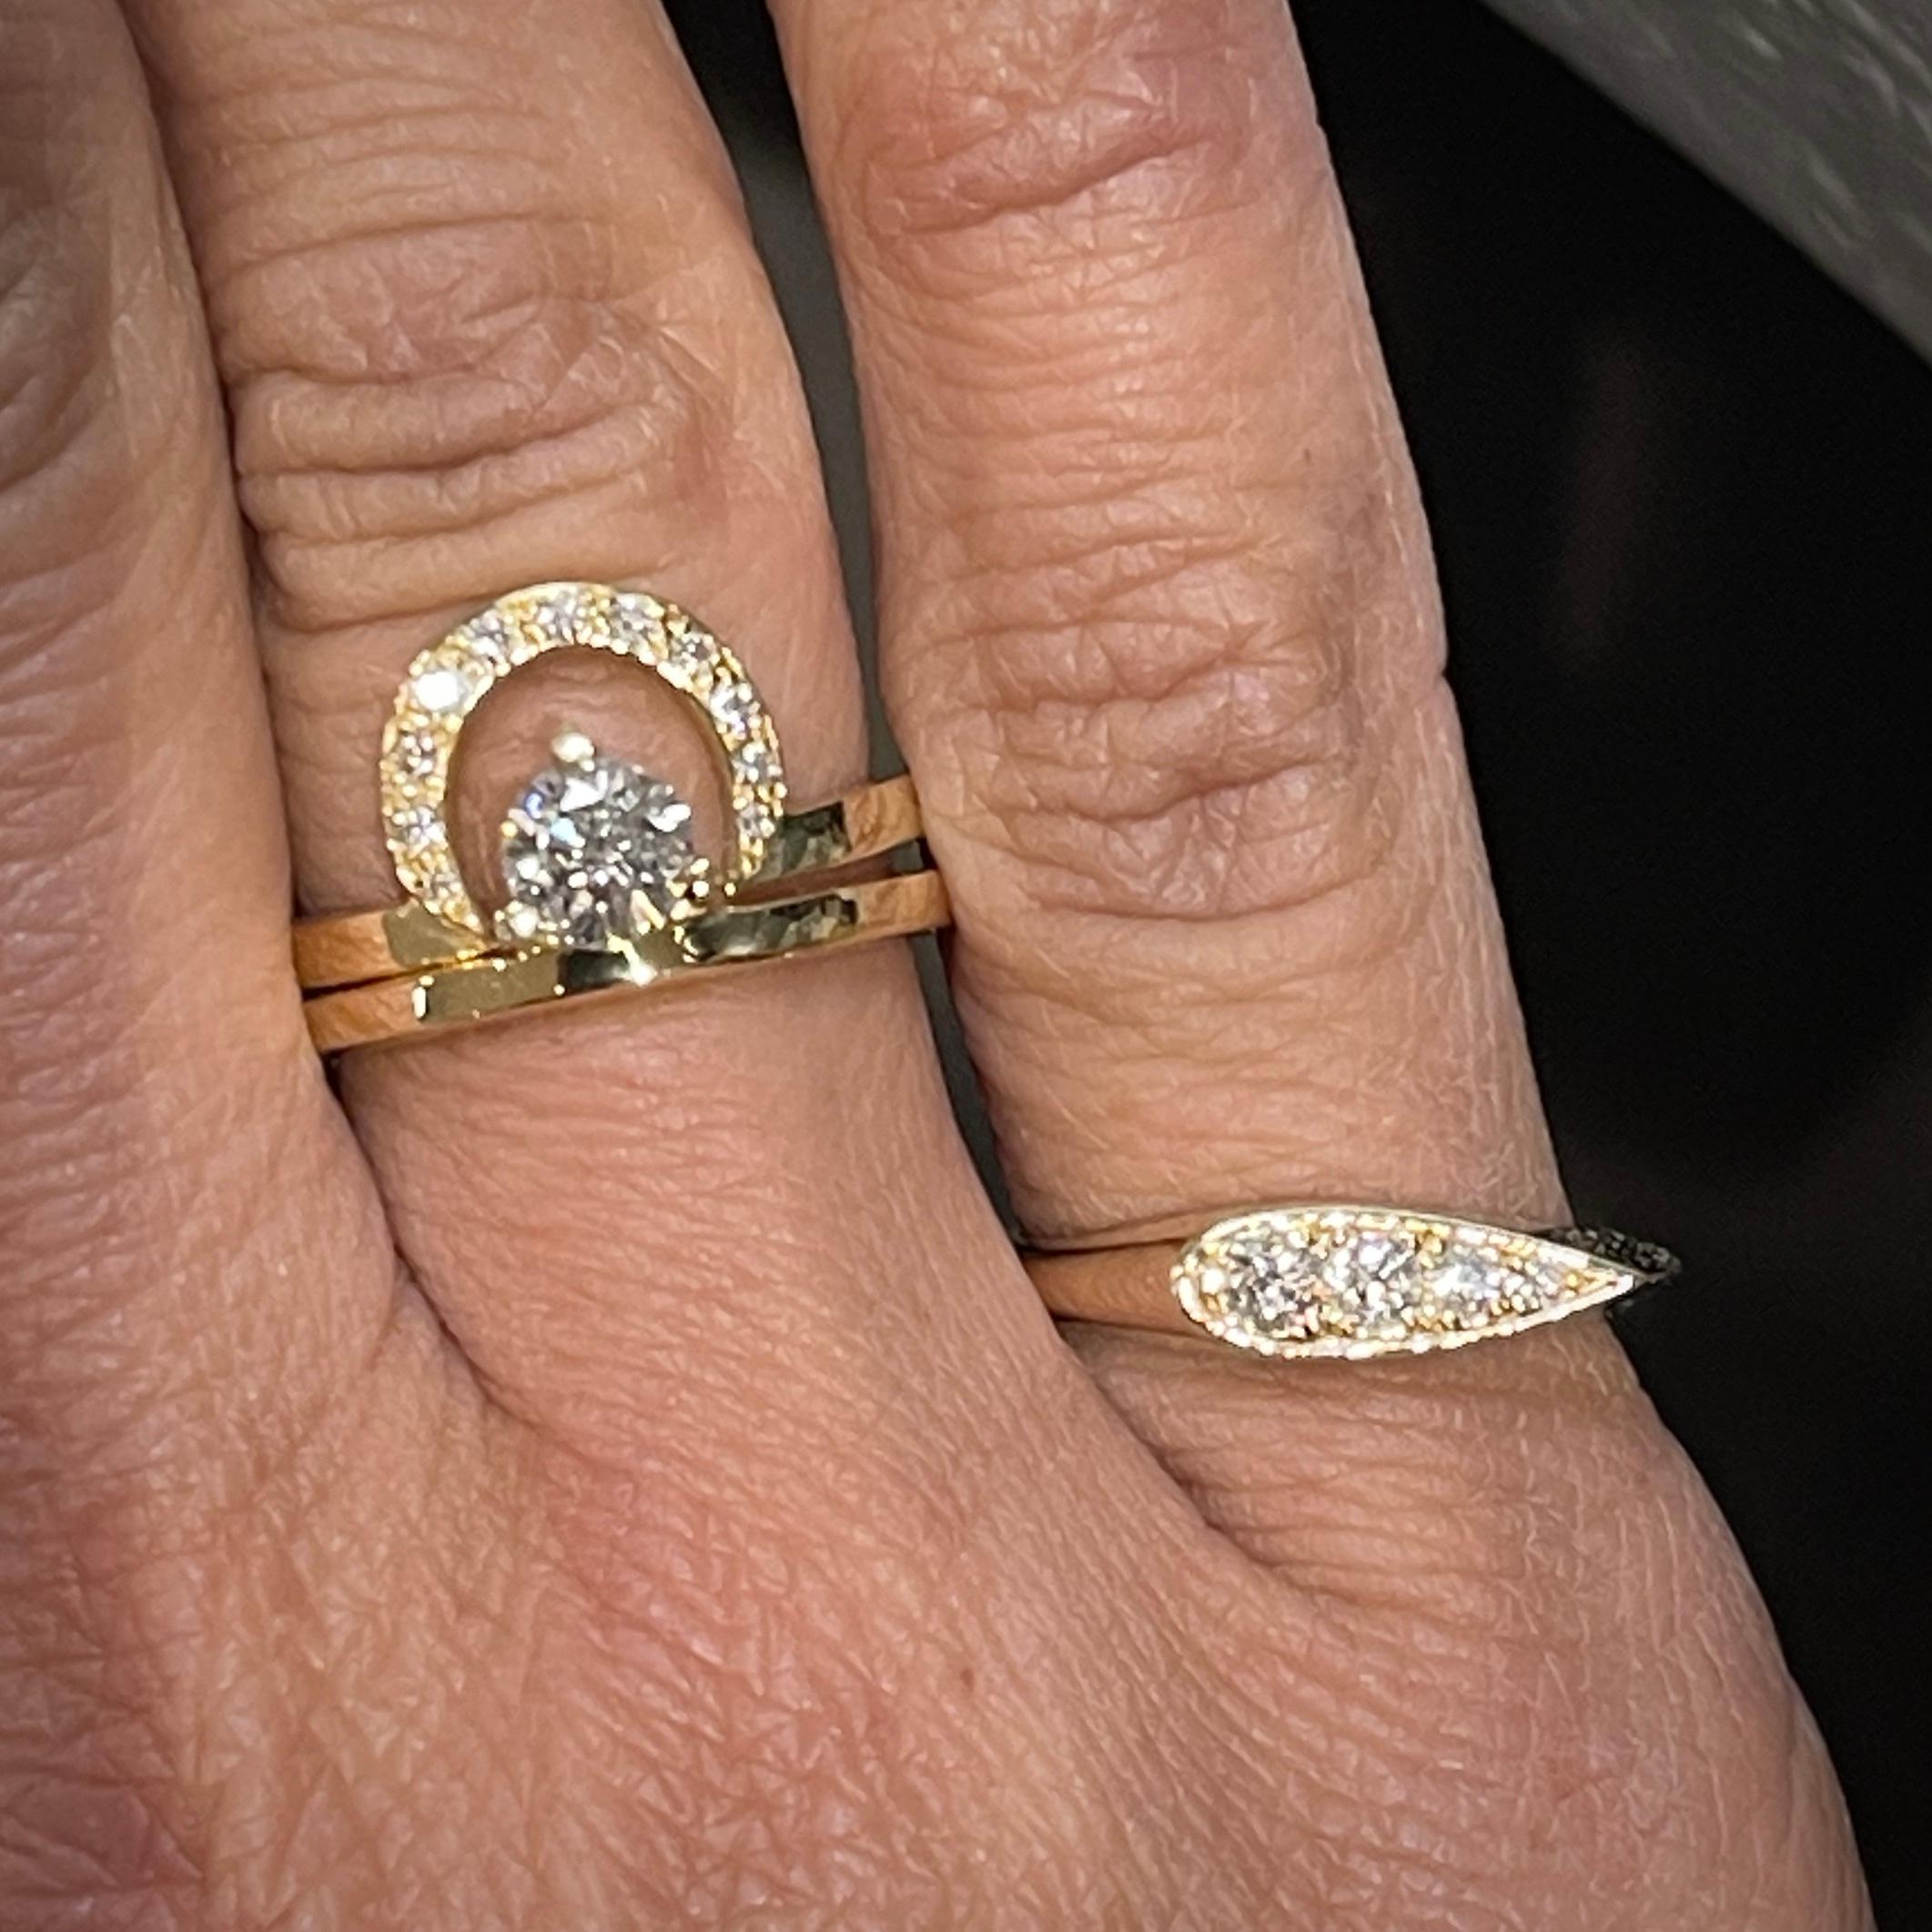 Descubre la elegancia y versatilidad de nuestro Anillo de sello de oro macizo de 14 quilates con diamantes engastados en forma de pera alargada. Esta impresionante pieza presenta una forma de pera alargada elaborada en oro de 14k, acentuada con 4 